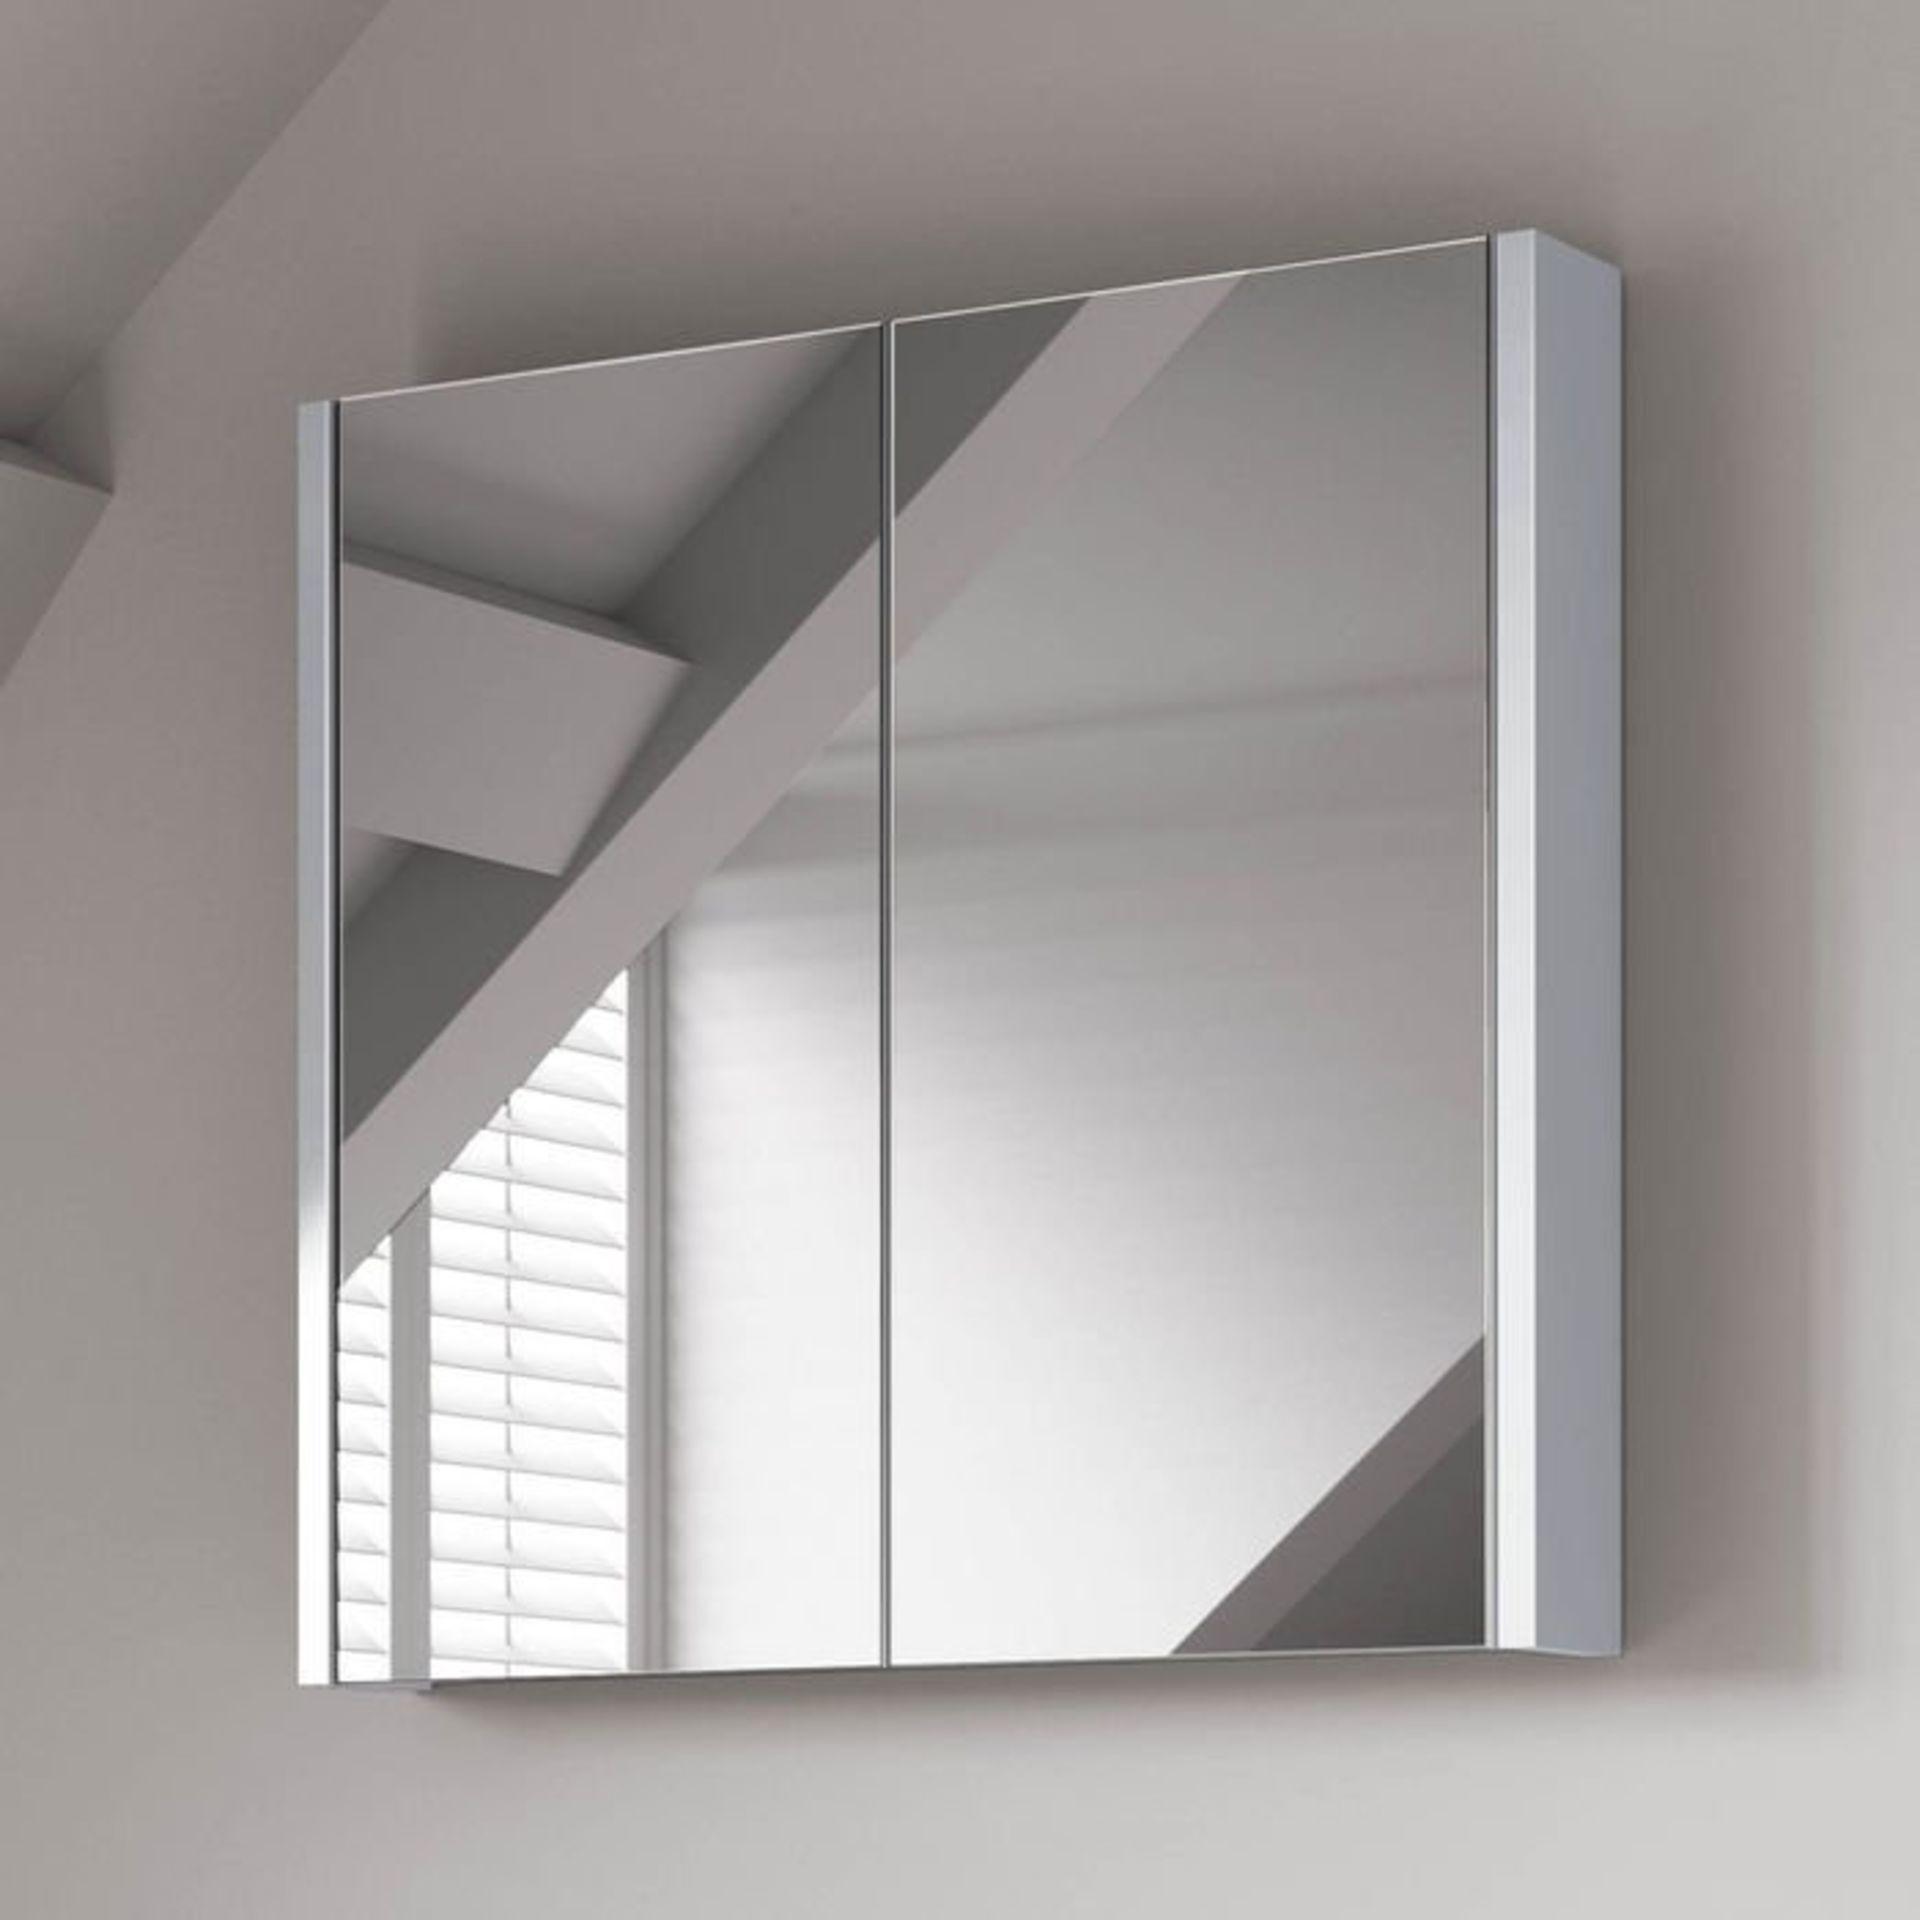 (S60) 600mm Gloss White Double Door Mirror Cabinet RRP £274.99 Sleek contemporary design Double door